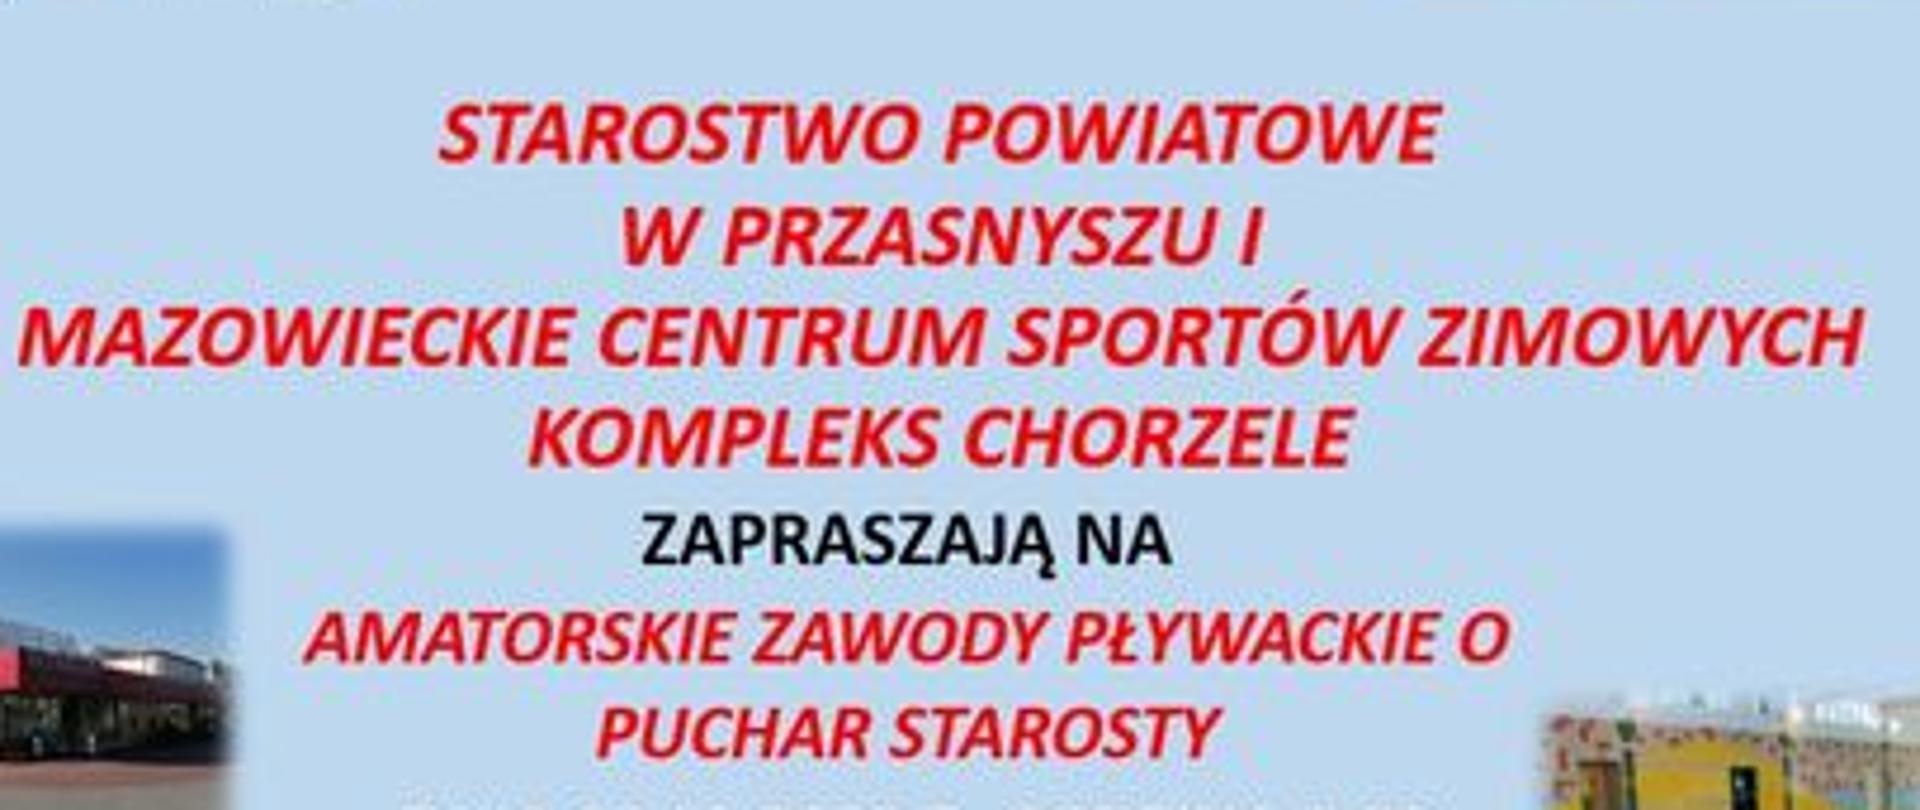 Zawody Pływackie o Puchar Starosty odbędą się w sobotę 10 grudnia br. na basenie krytym w Chorzelach przy ul. Szkolnej 4 a